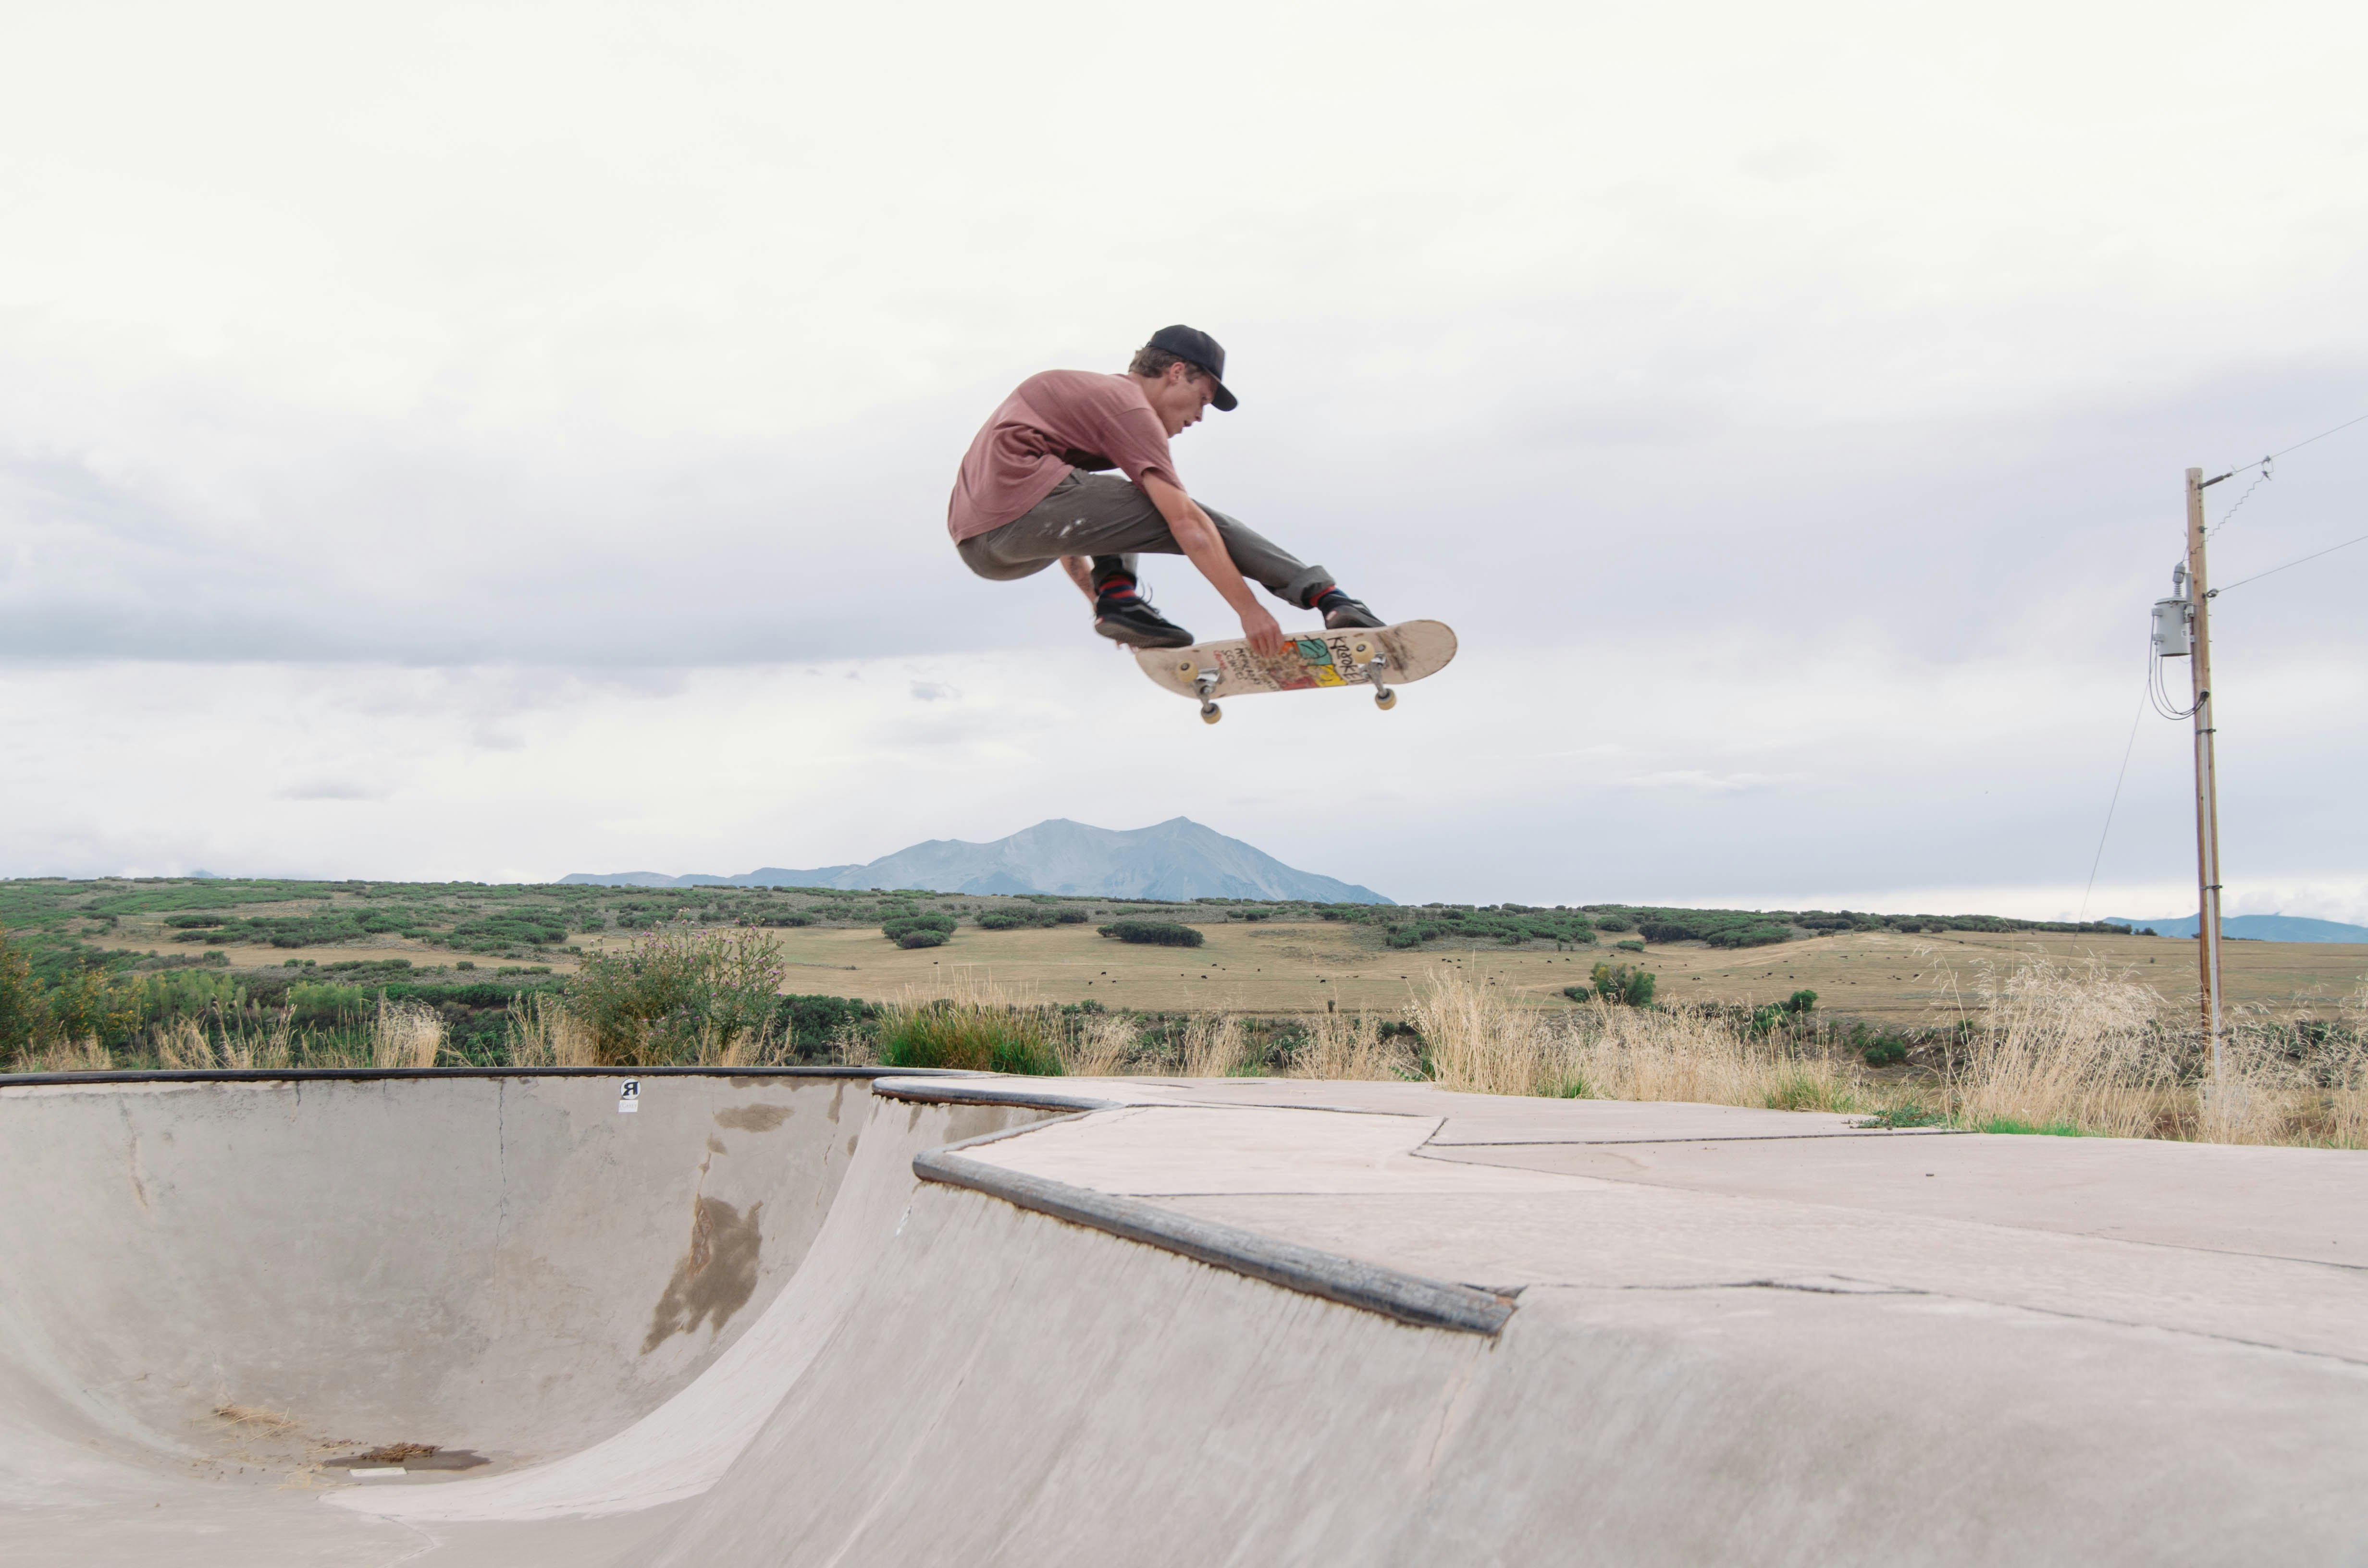 man riding skateboard in air during daytime